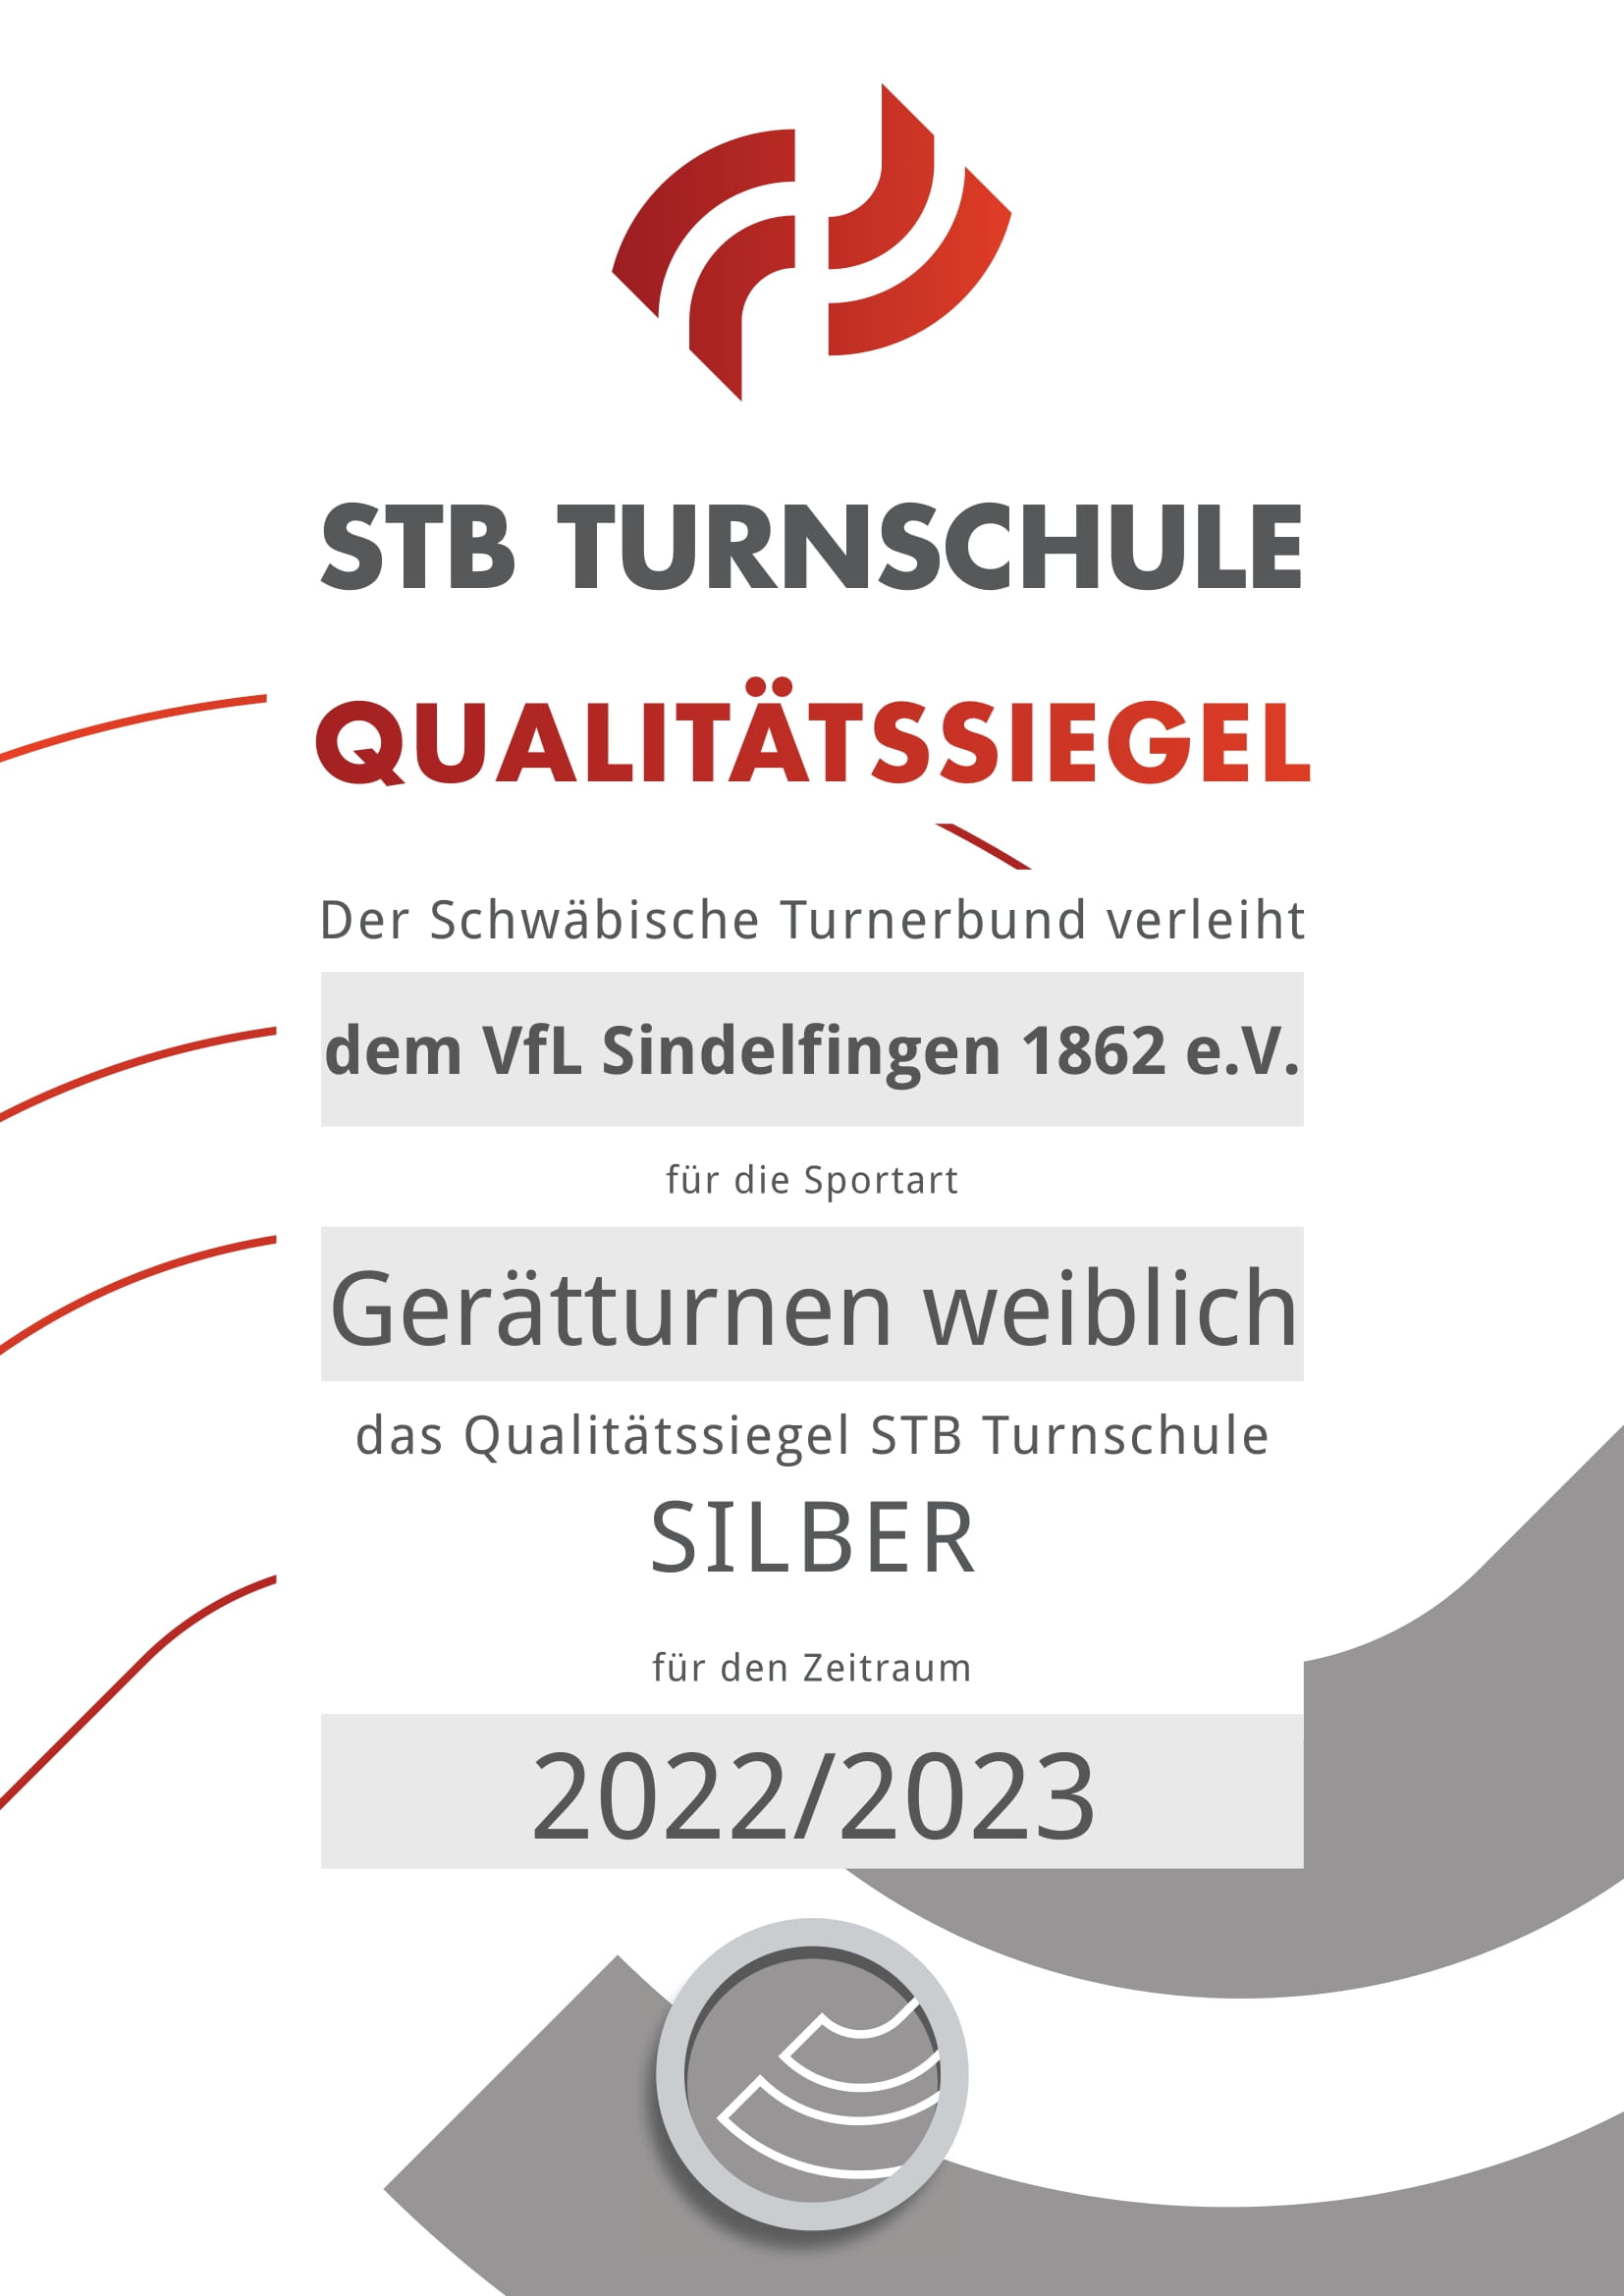 Die Turnschlule Flick-Flack ist eine mit Silber zertifizierte STB Turnschule